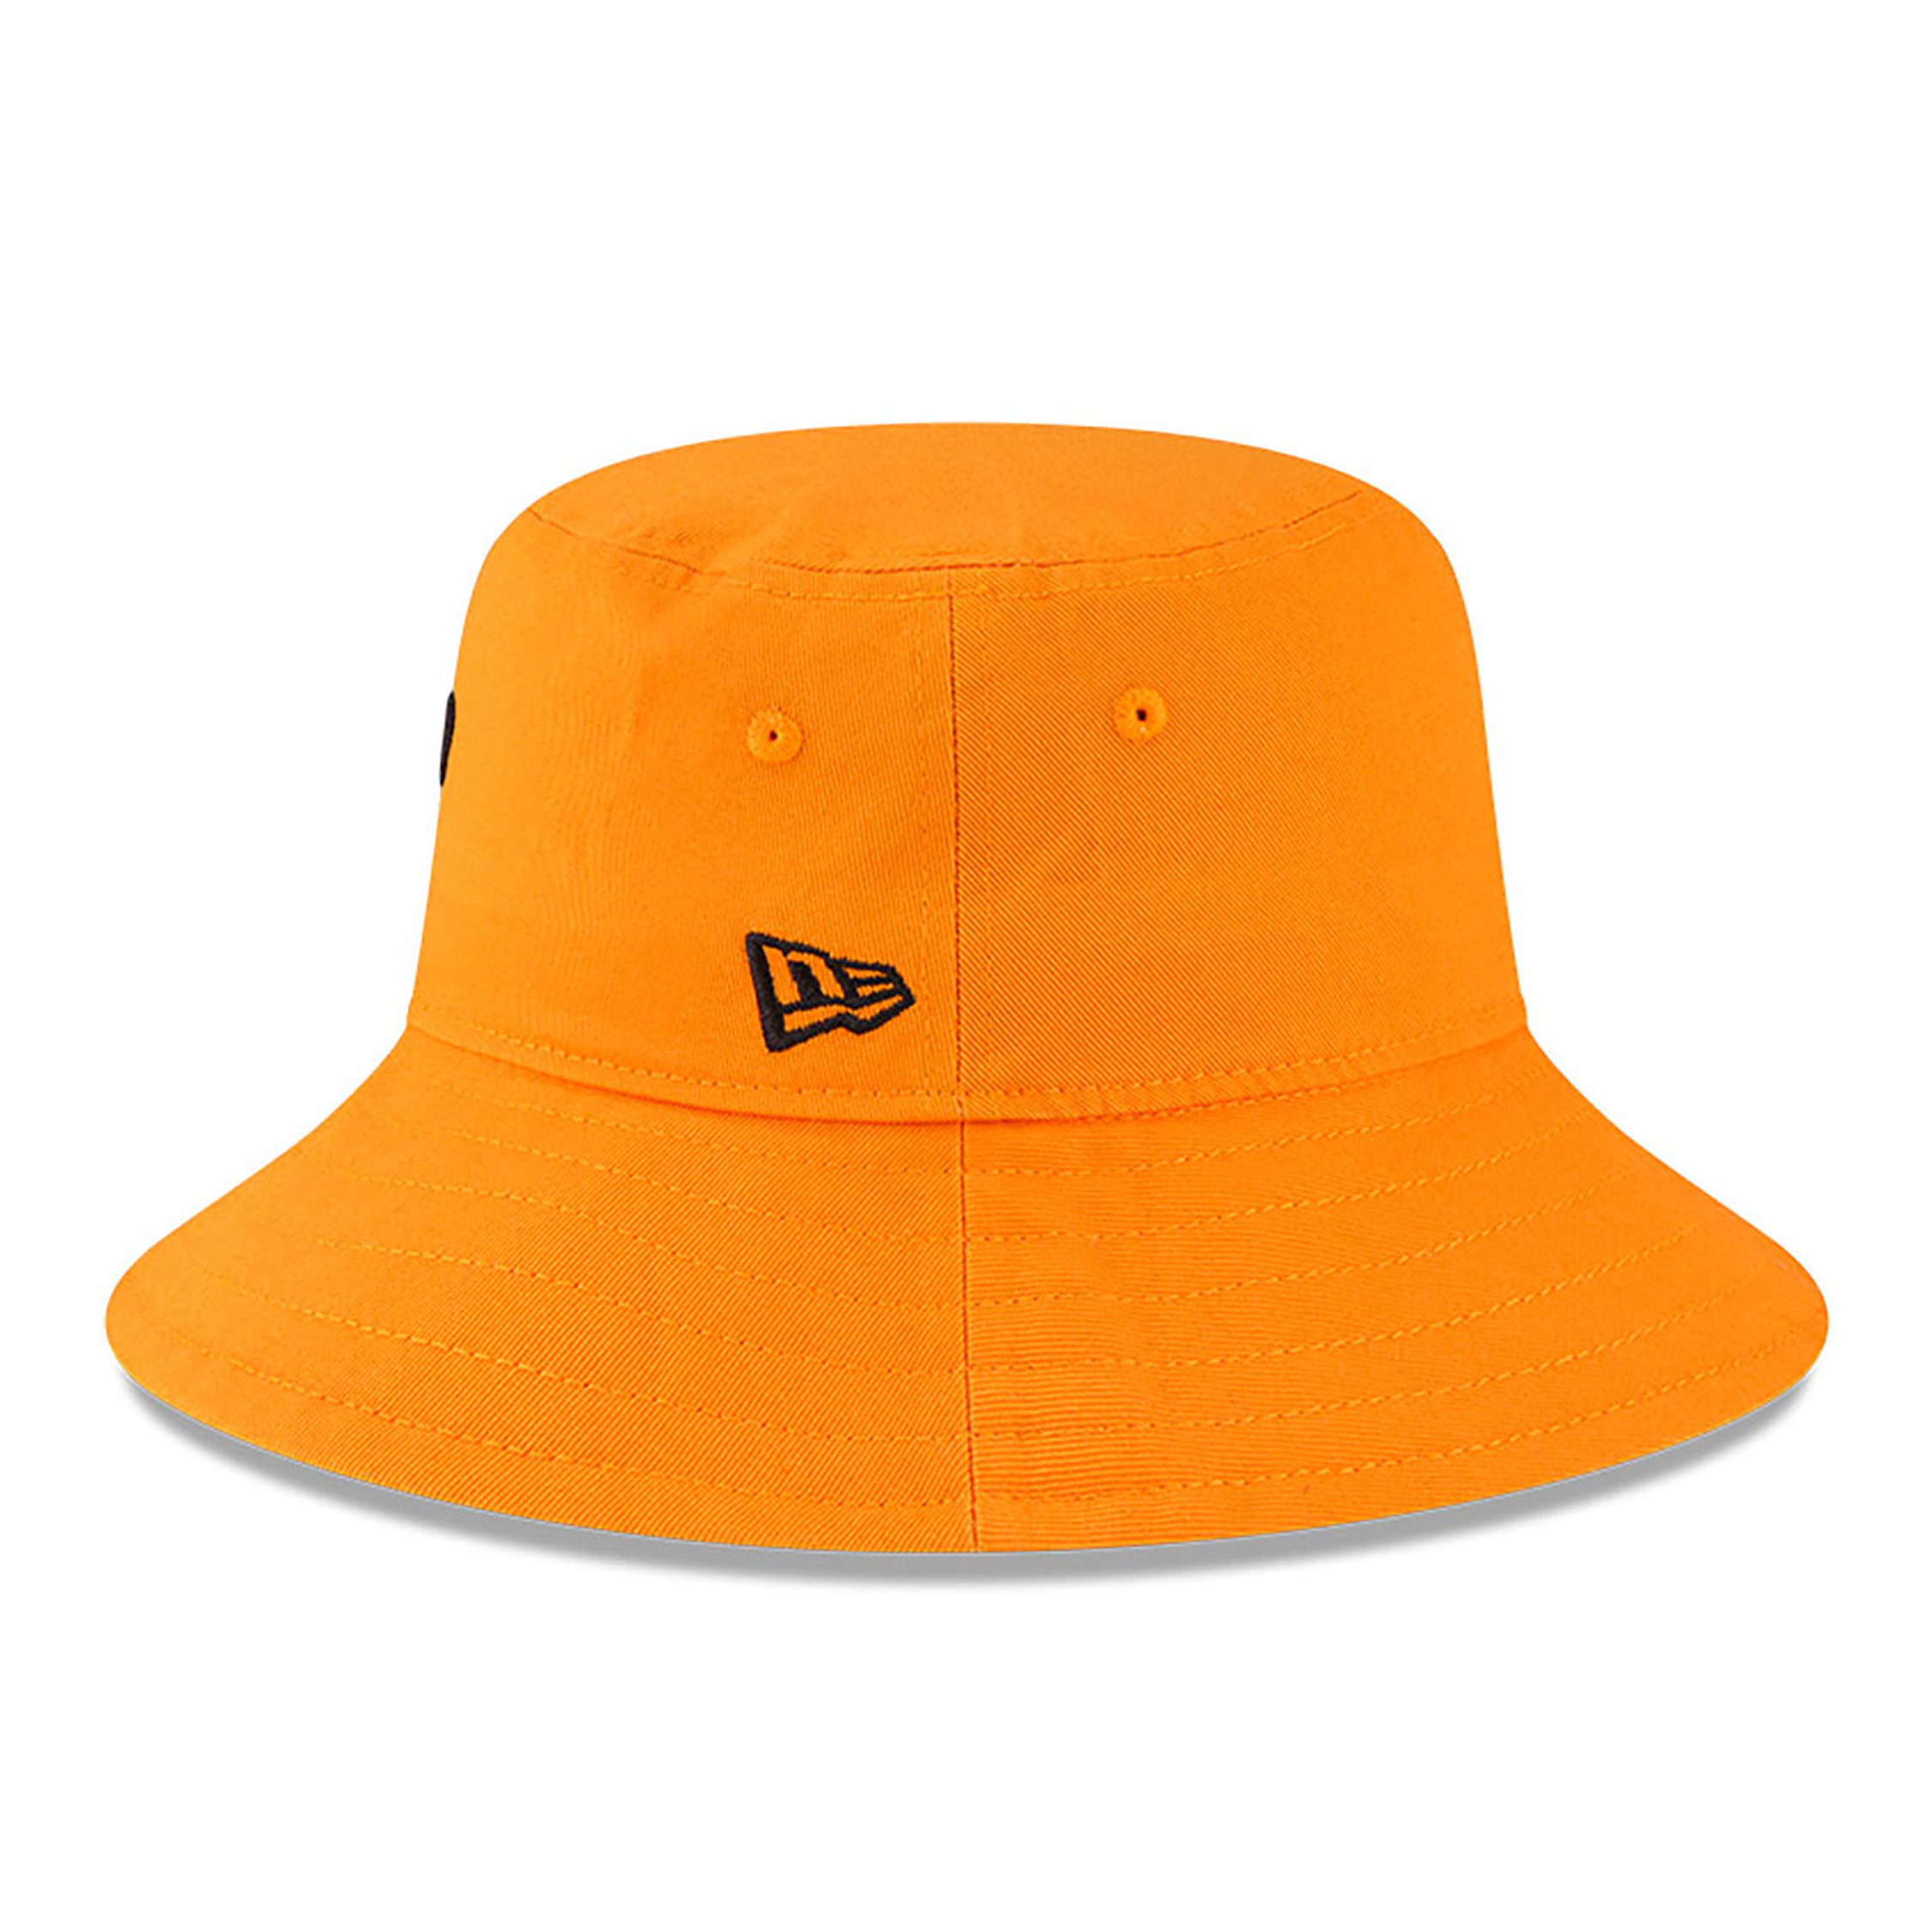 McLaren Racing Orange Bucket Hat